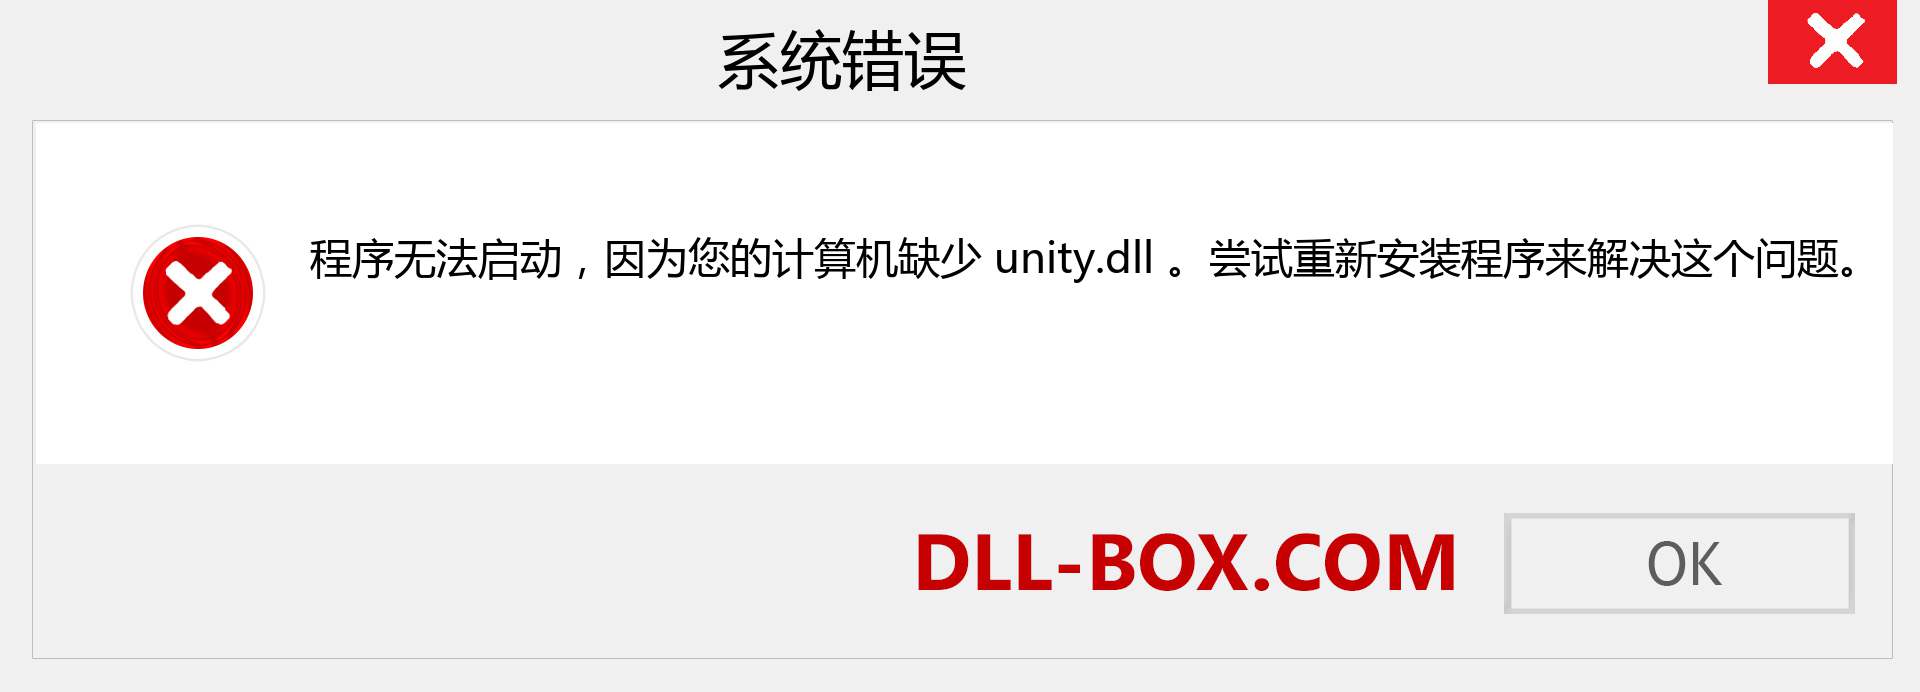 unity.dll 文件丢失？。 适用于 Windows 7、8、10 的下载 - 修复 Windows、照片、图像上的 unity dll 丢失错误